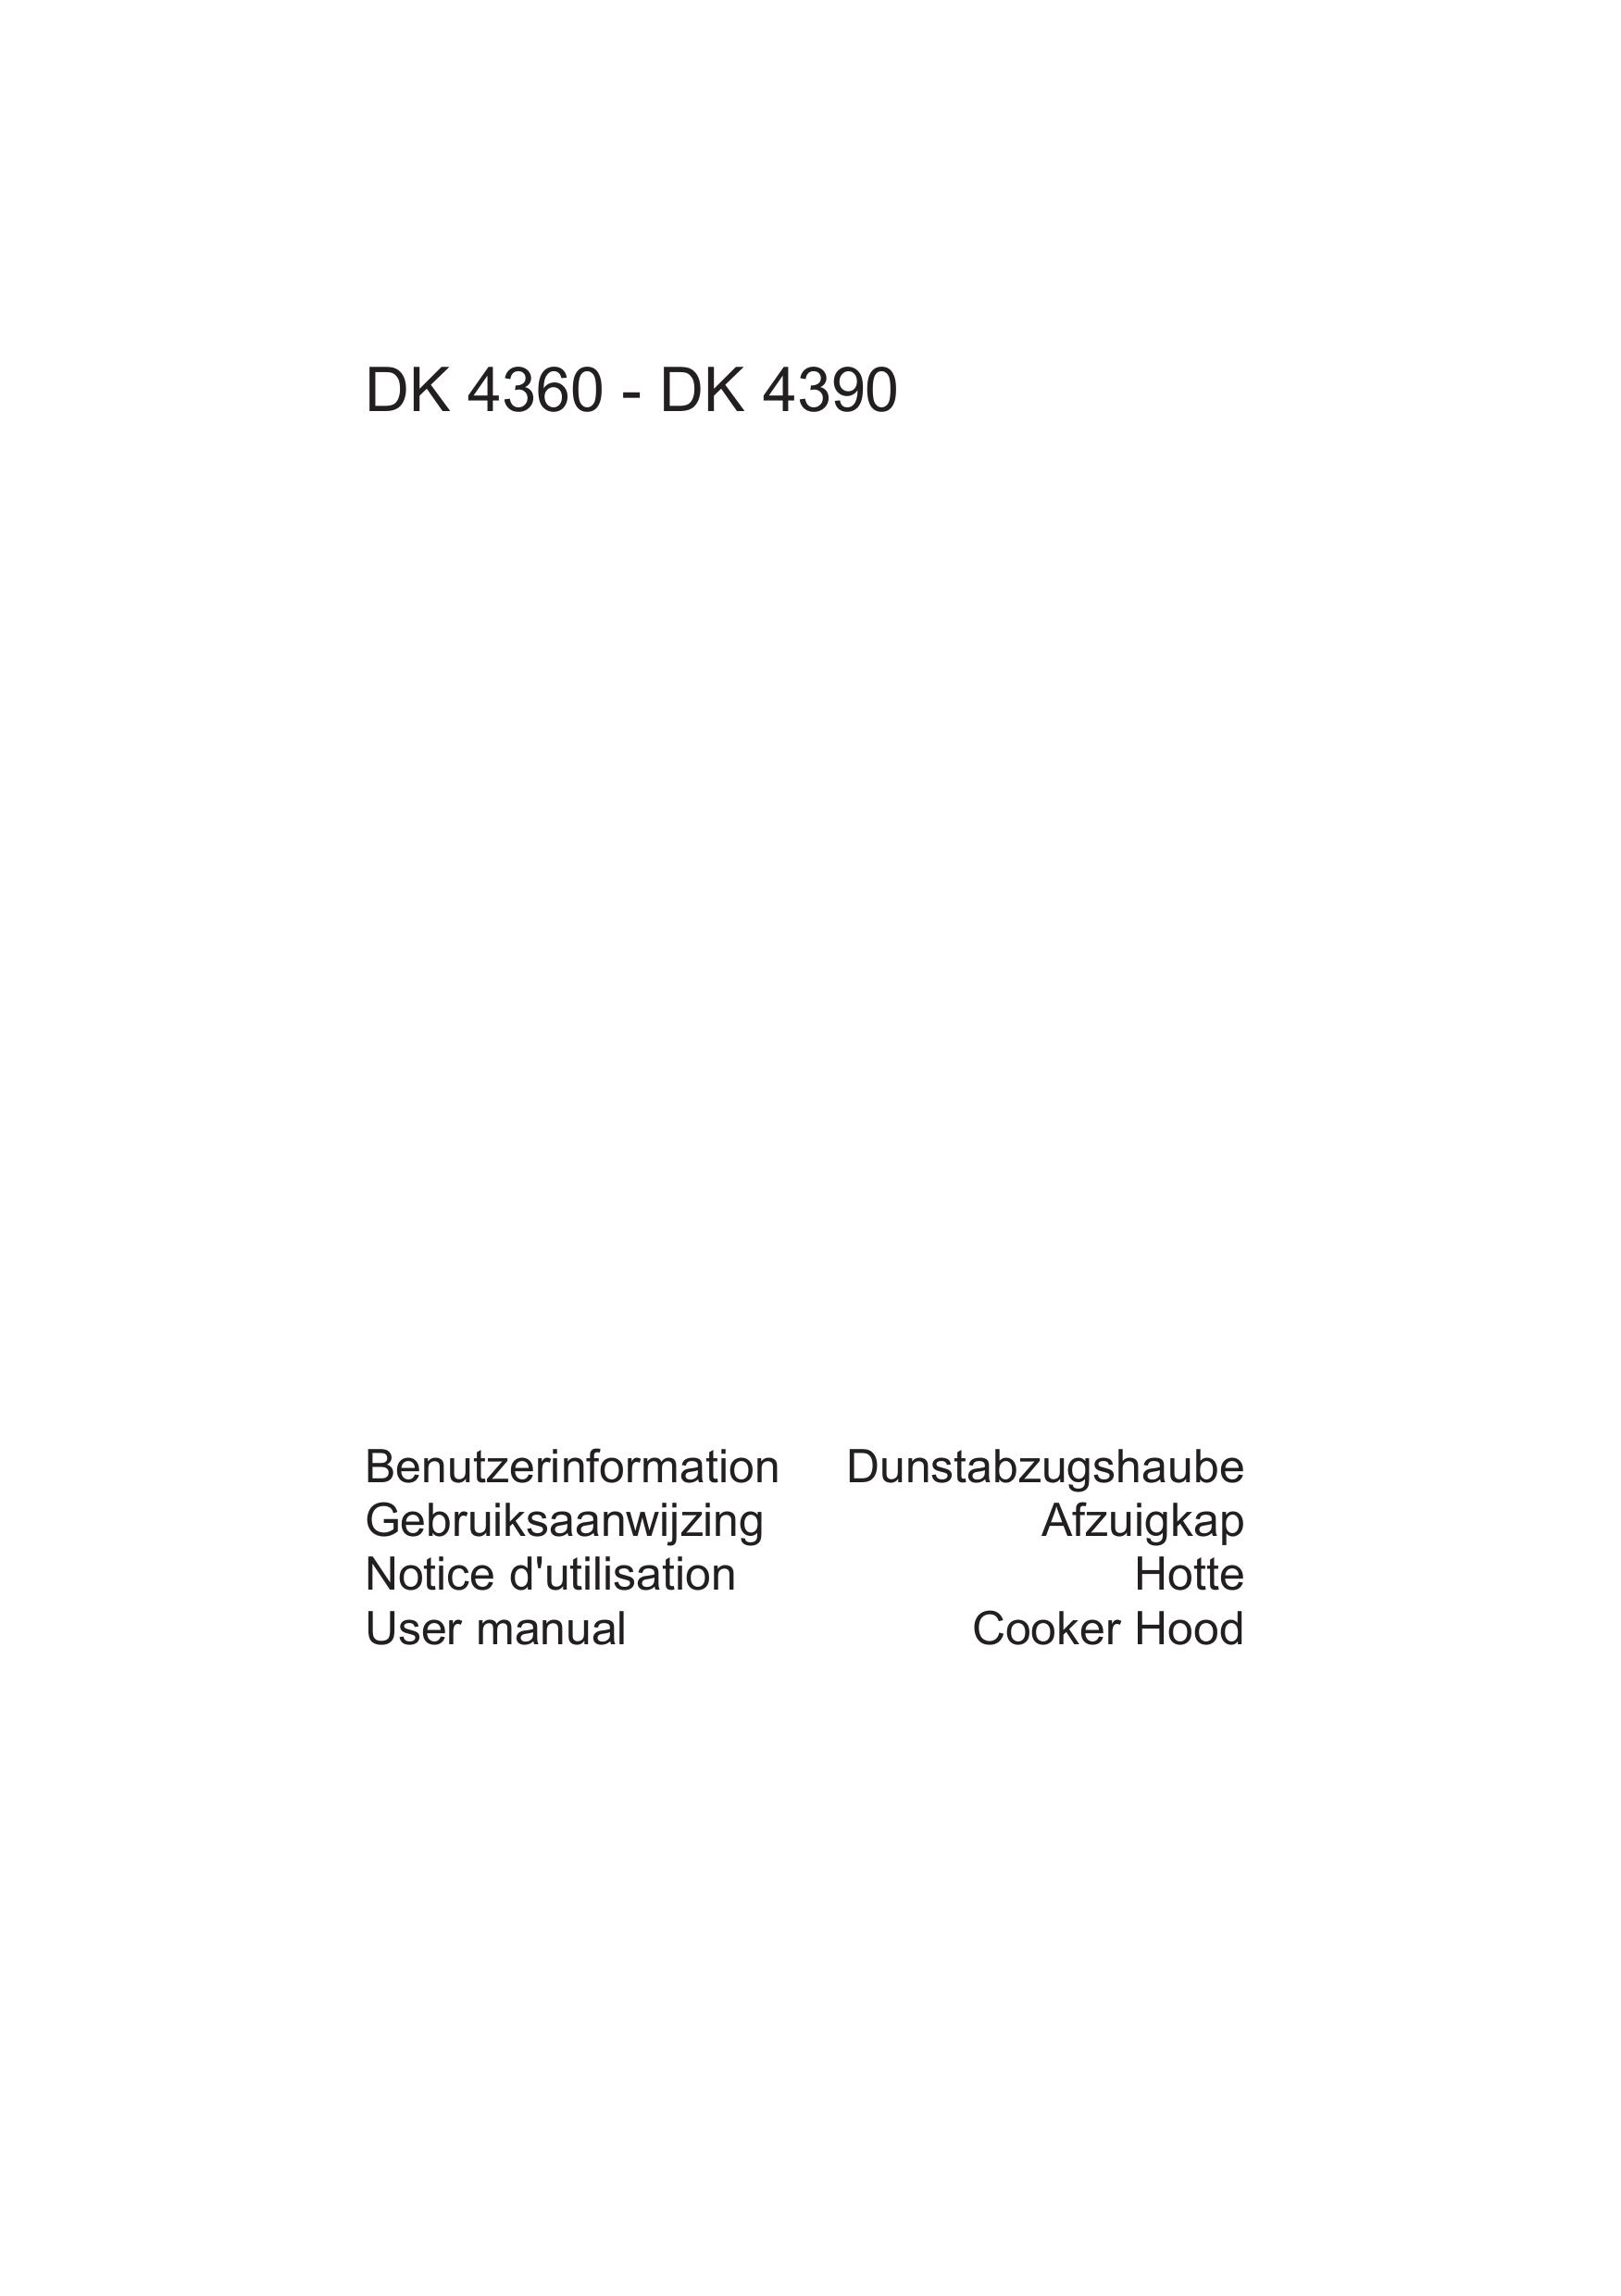 AEG DK 4390 Ventilation Hood User Manual